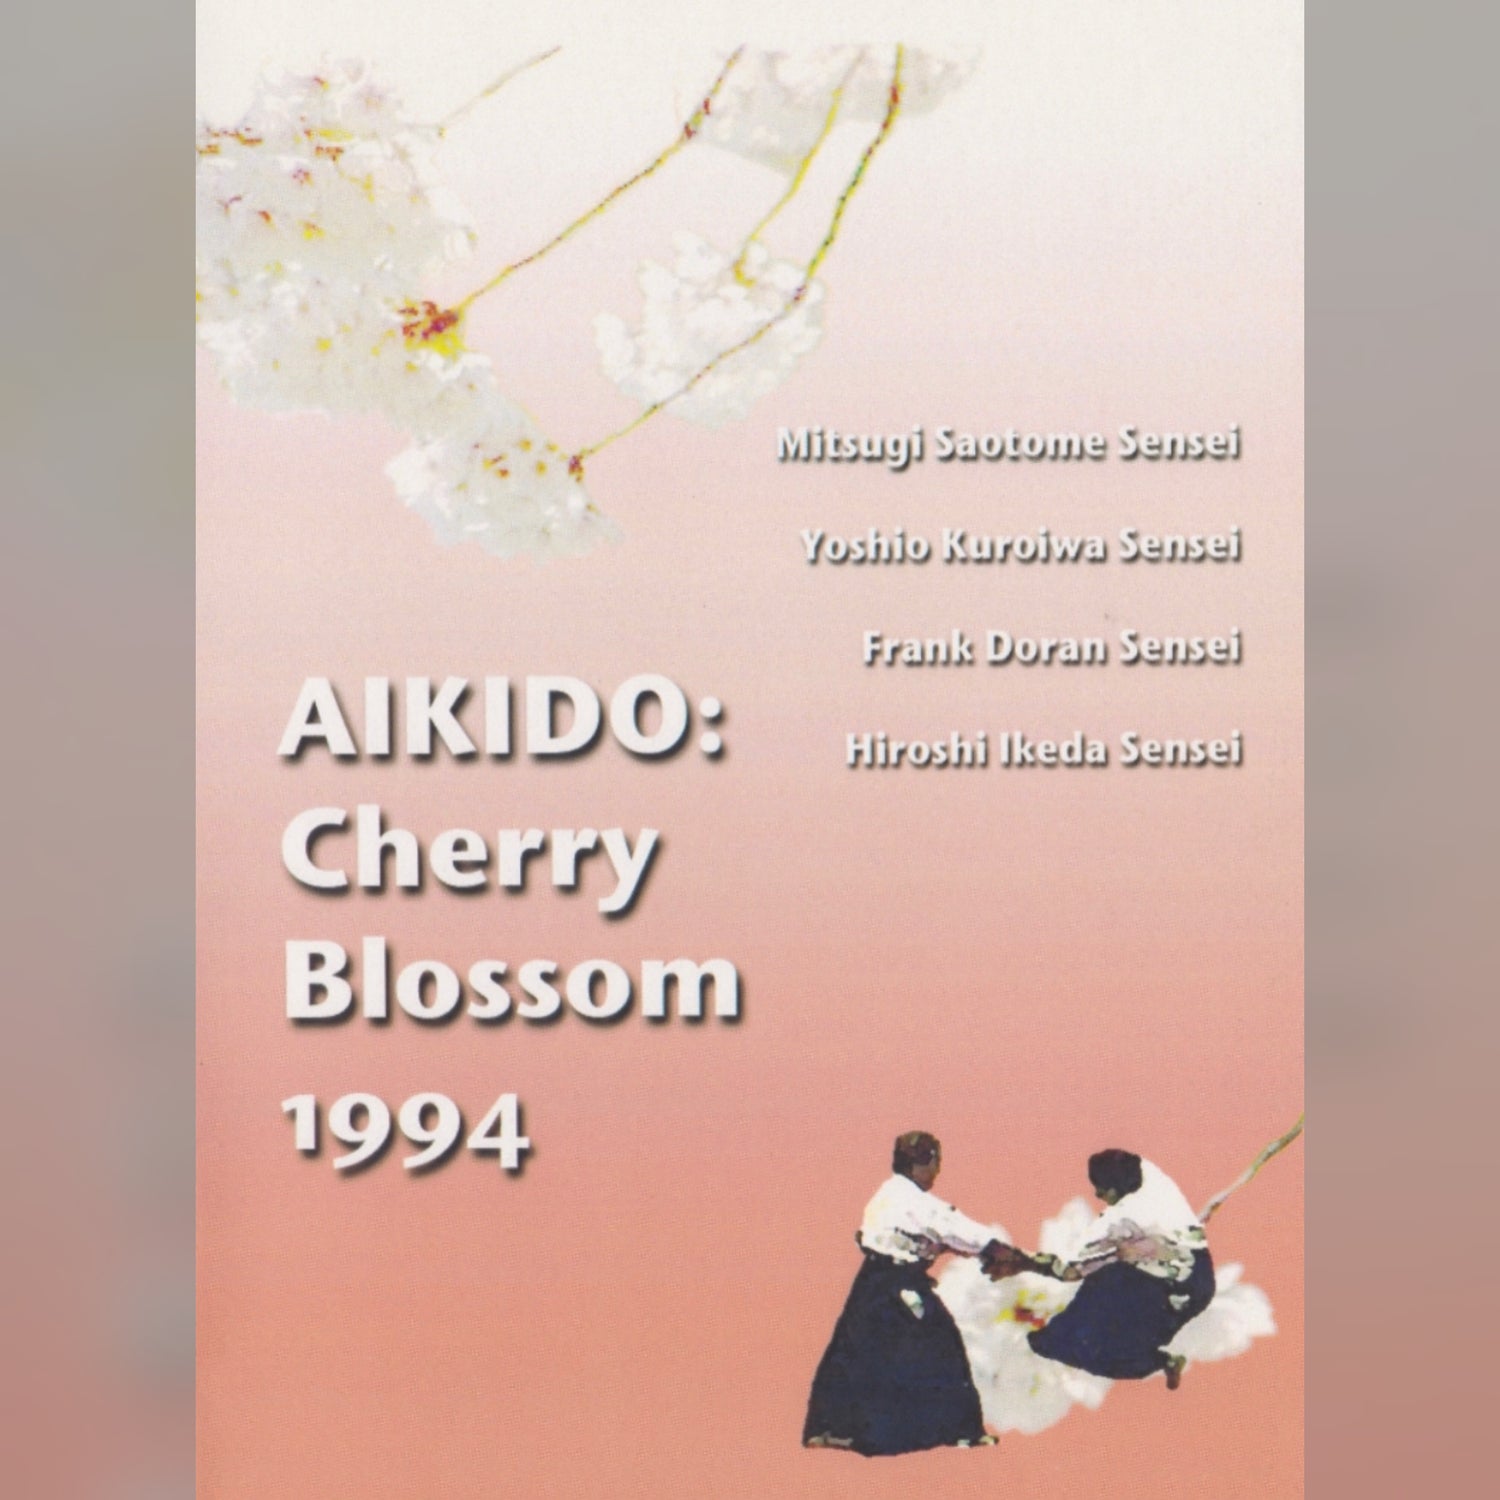 Aikido Cherry Blossom Festival (On Demand)